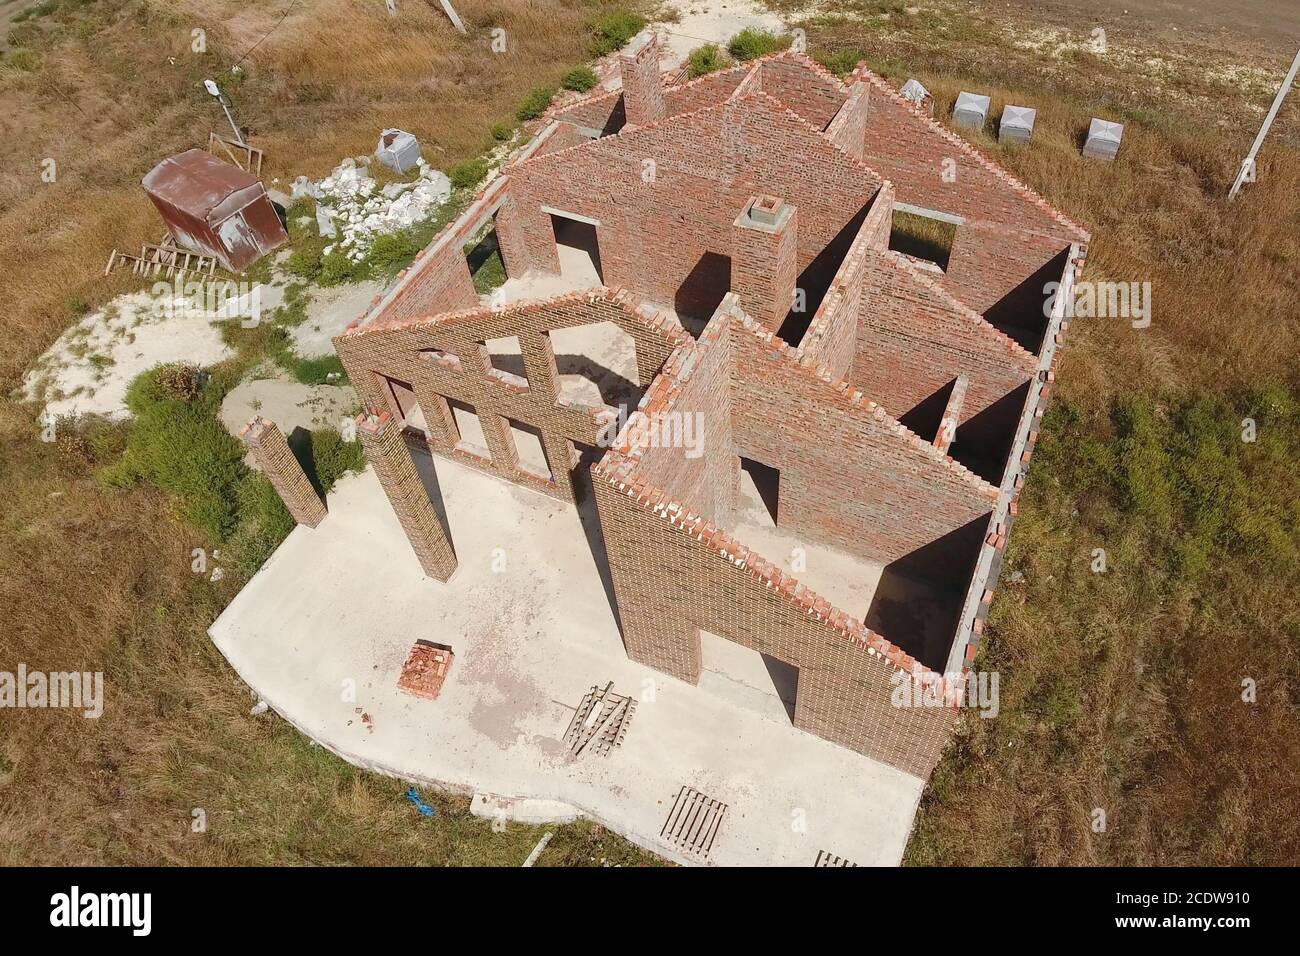 La maison est construite en briques rouges. Les murs de la maison sont une vue de dessus Banque D'Images